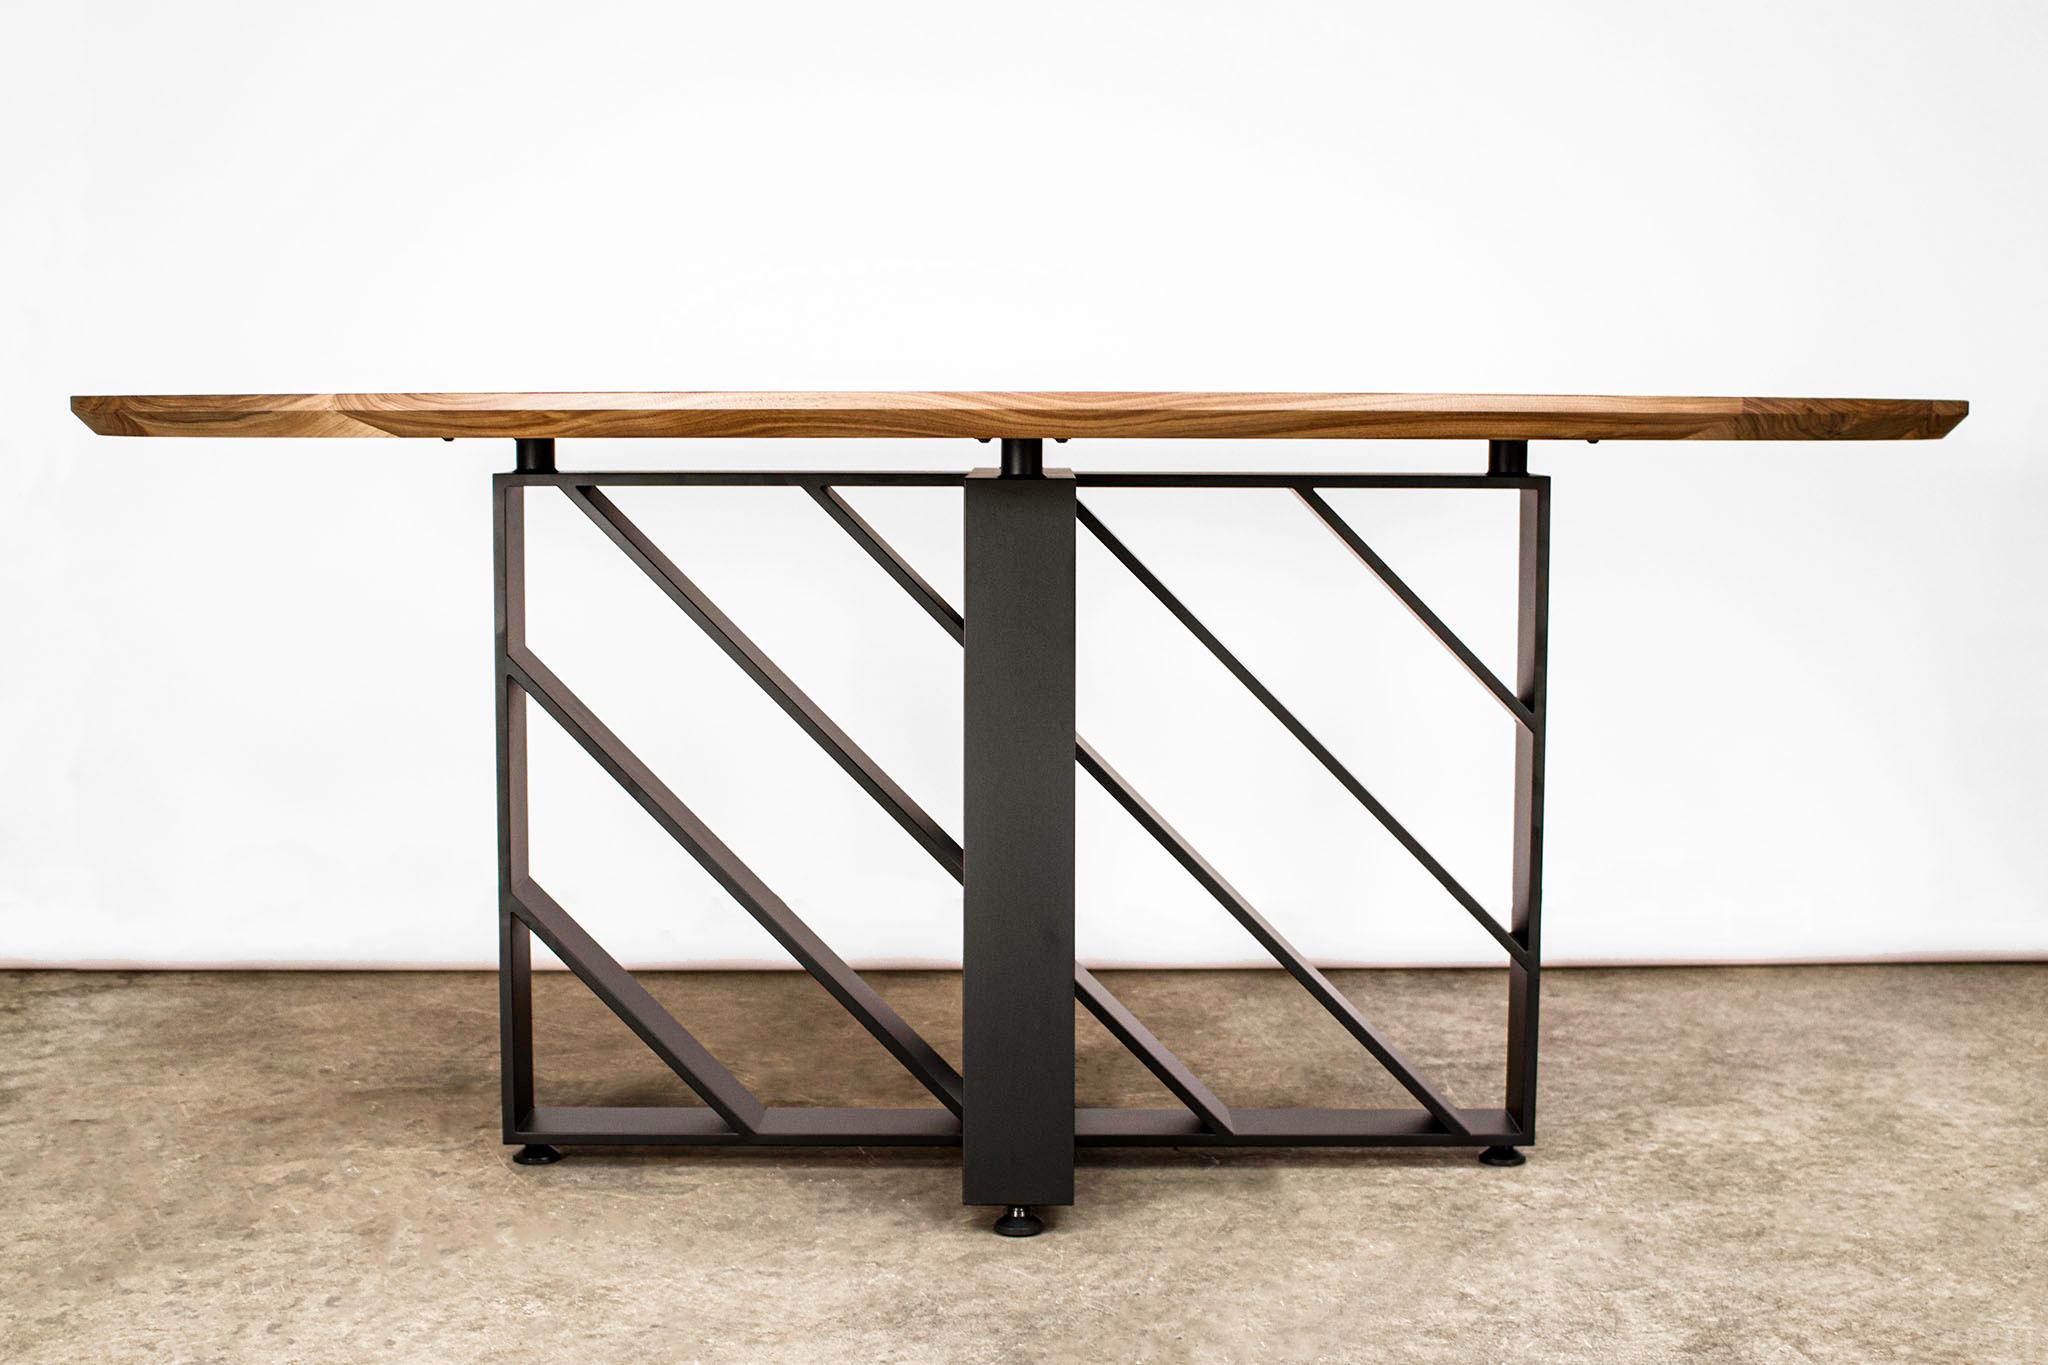 Dieser moderne ovale Tisch aus geschwärztem Stahl und Hartholz sieht aus jedem Blickwinkel anders aus, weil die Stahlebenen Licht und Schatten bewegen. Hergestellt aus amerikanischem Schwarznussbaum und 1/2